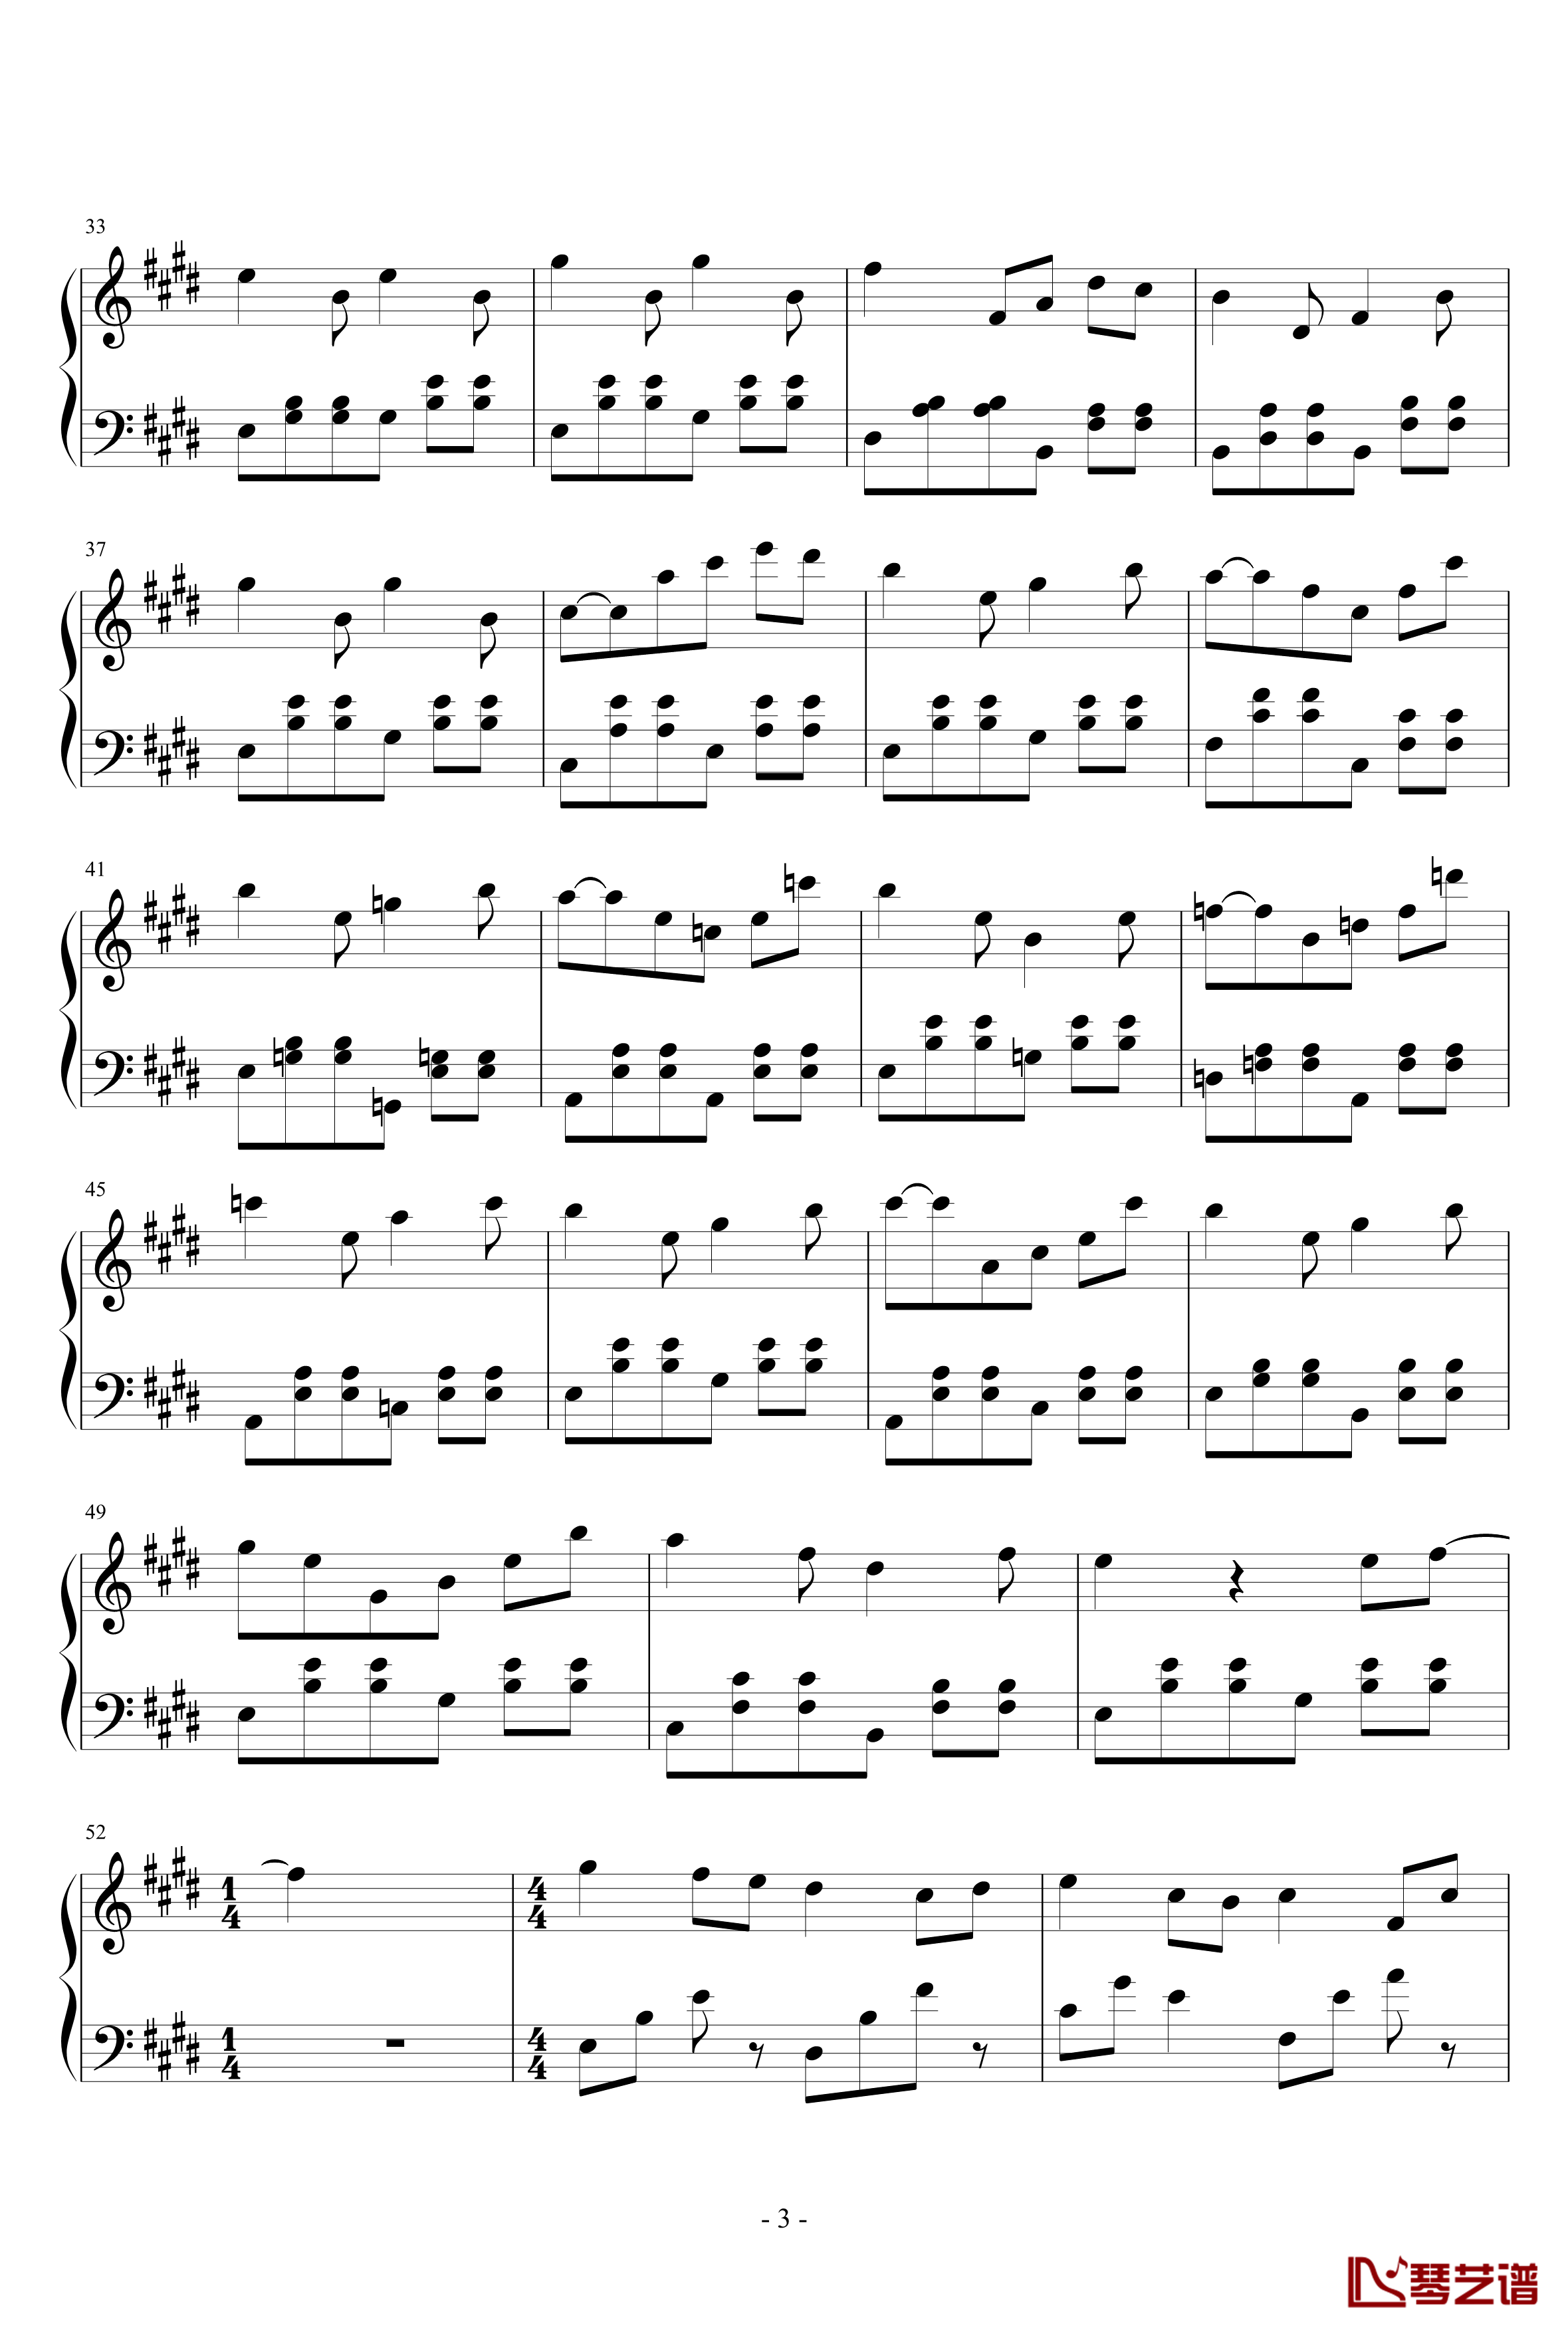 春天的幻想曲钢琴谱-费伦斯特19913